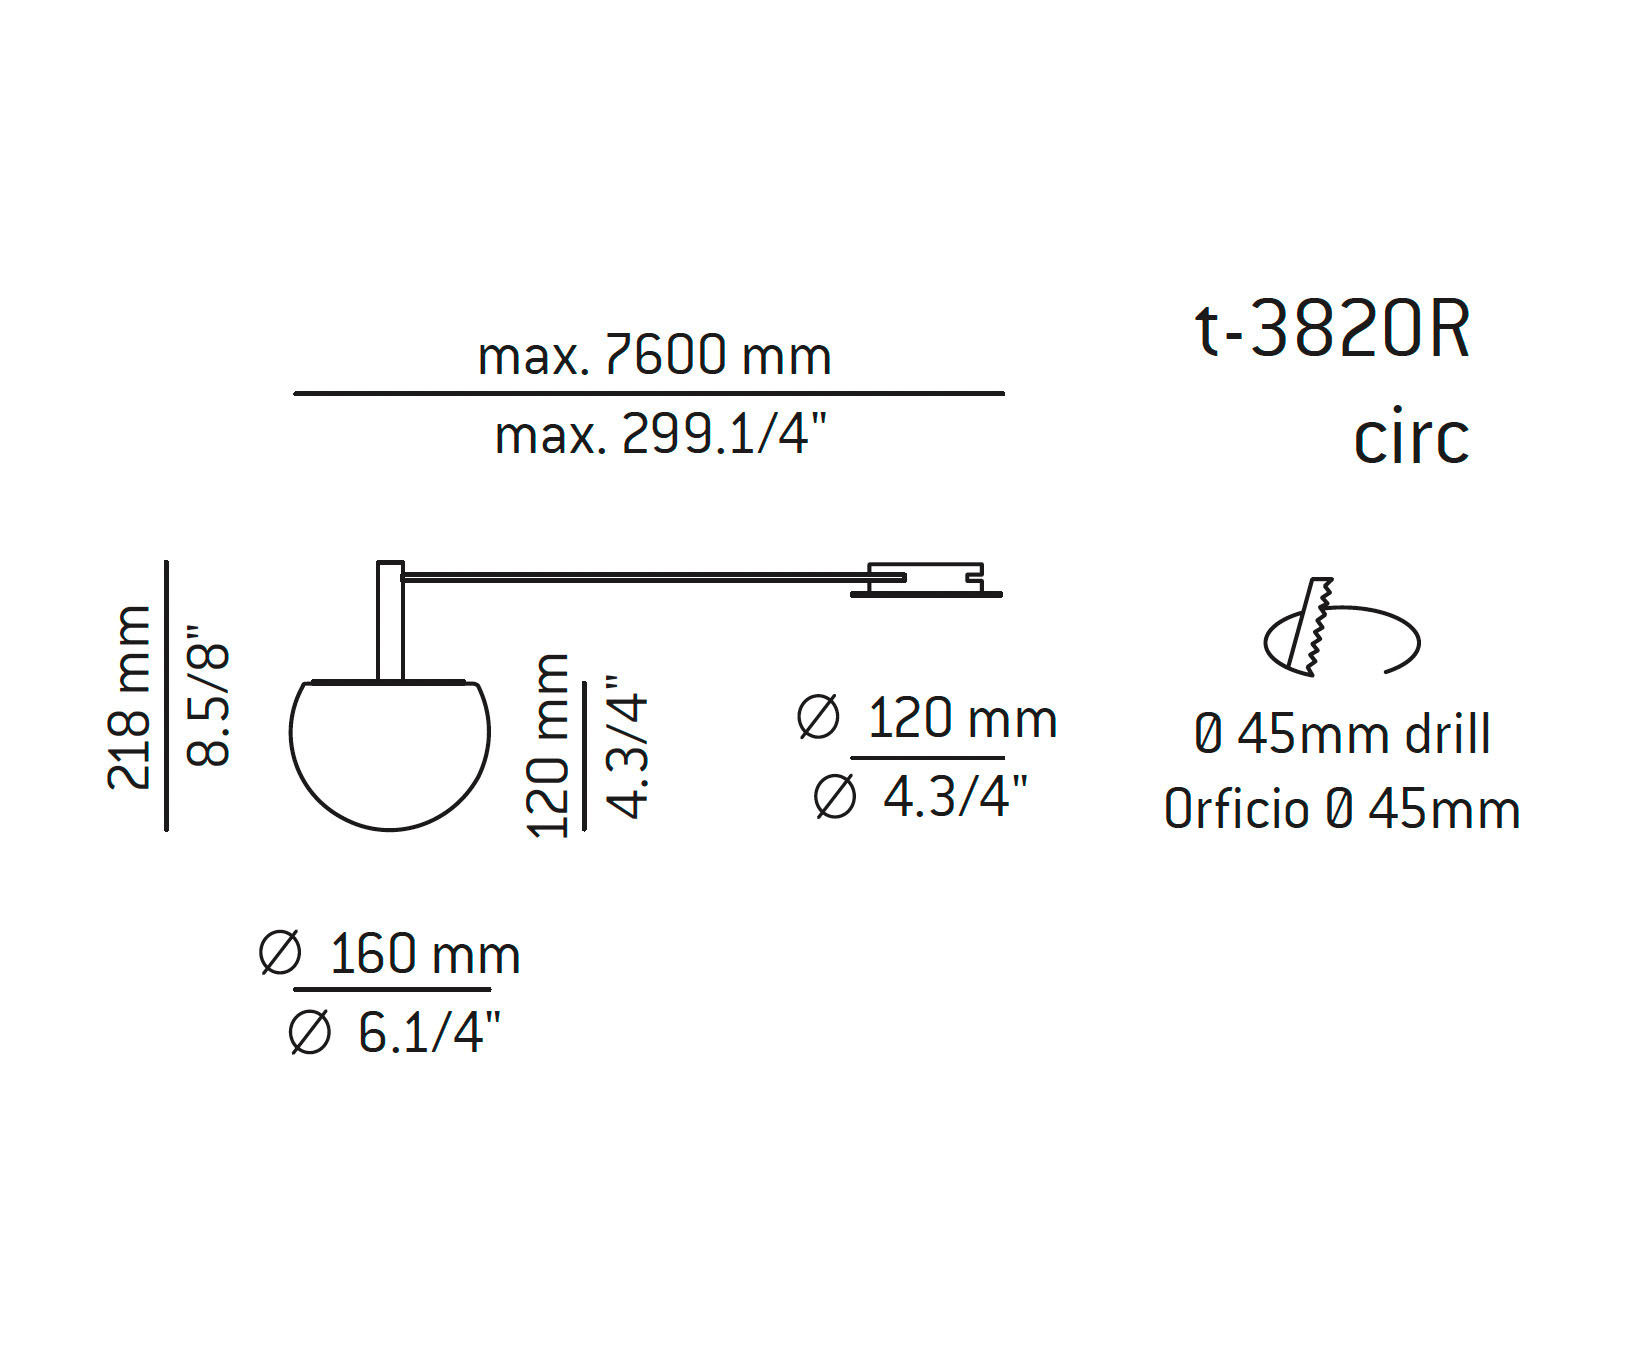 Medidas Circ modelo t-3820R de techo de Estiluz